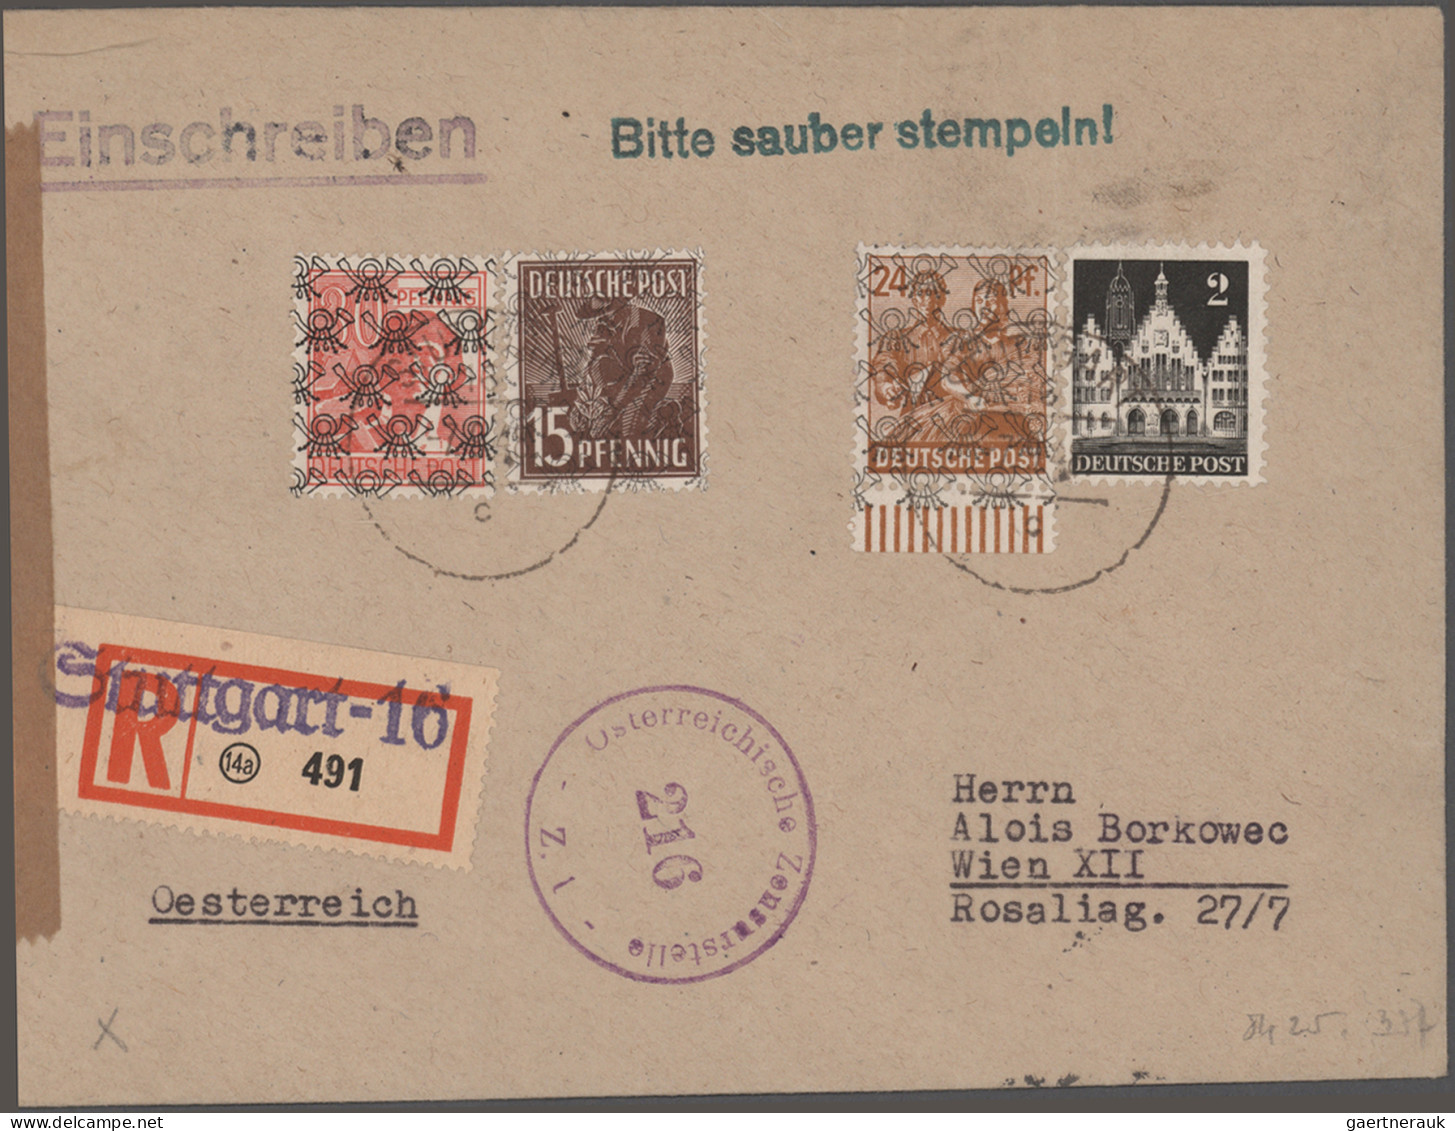 Deutschland: 1840/1960 (ca.), UMFASSENDE BELEGE-SAMMLUNG: guter und breit gefäch